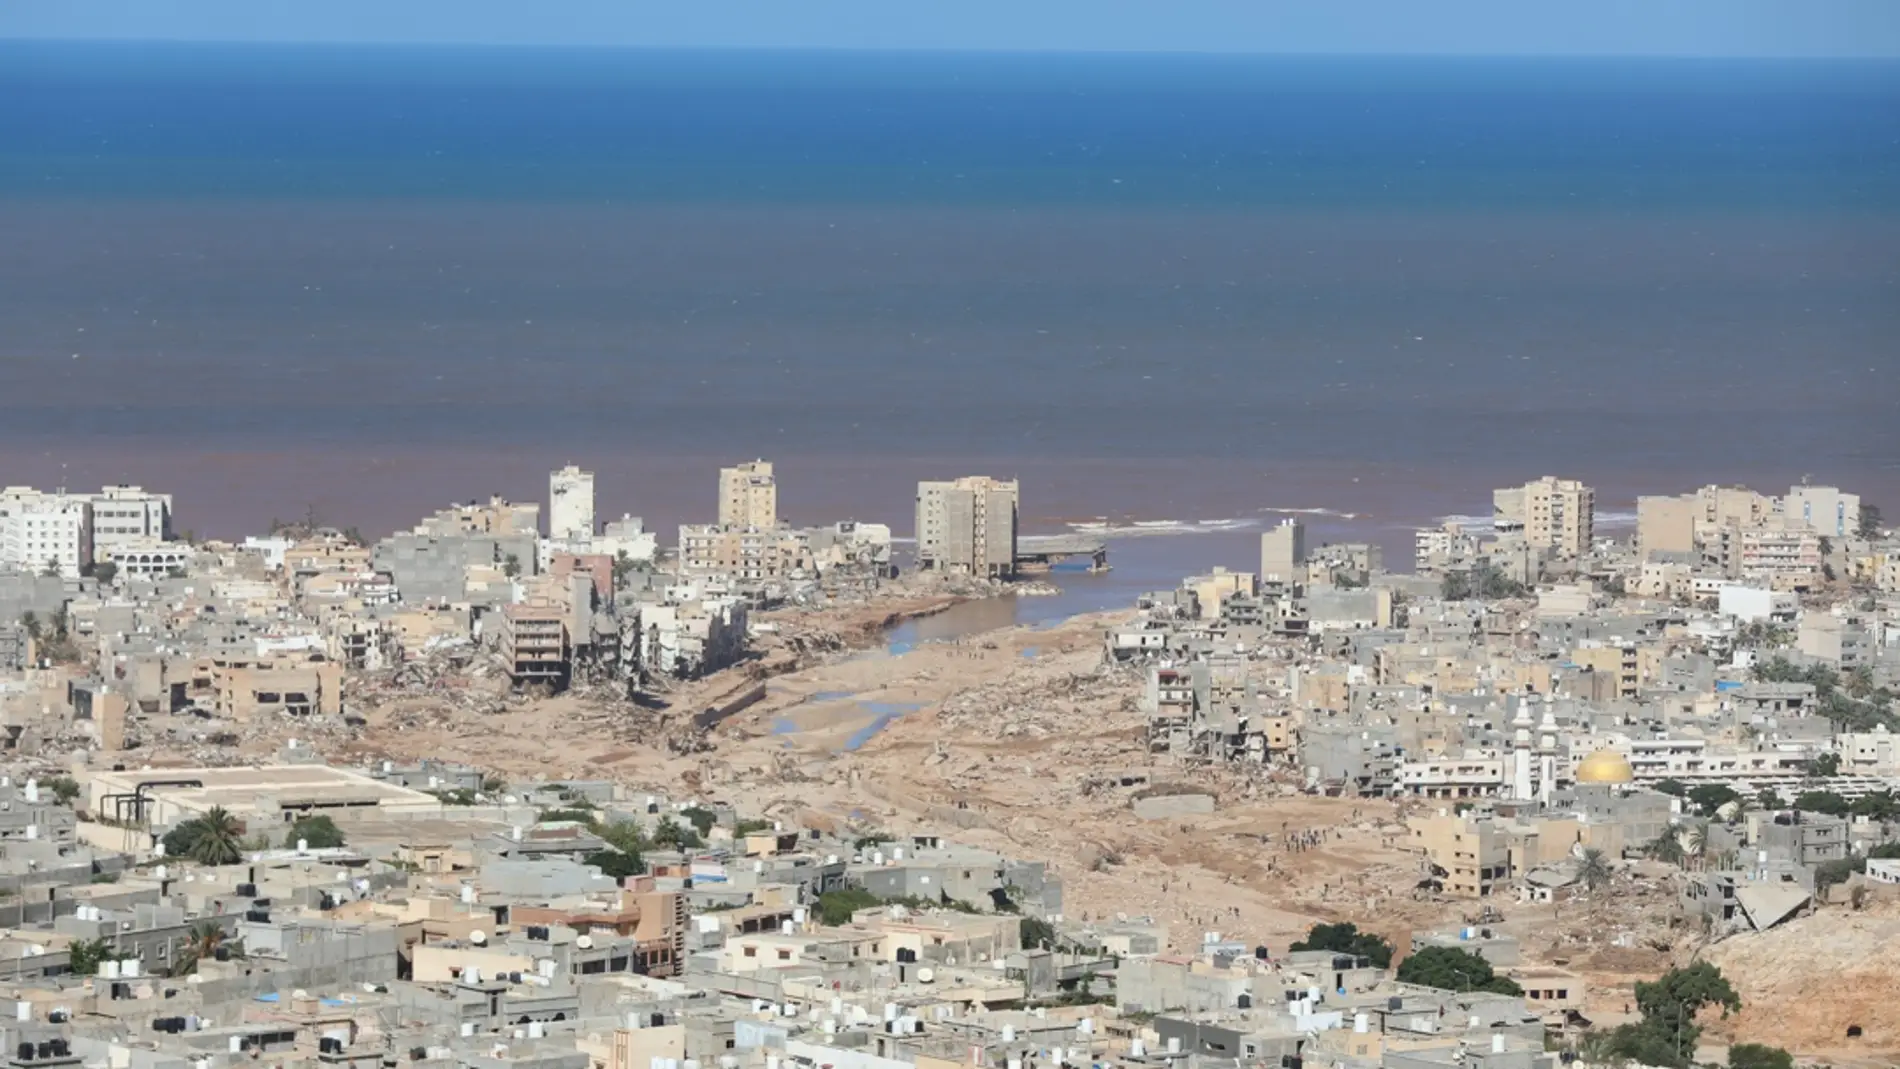 Vista general de Derna, Libia